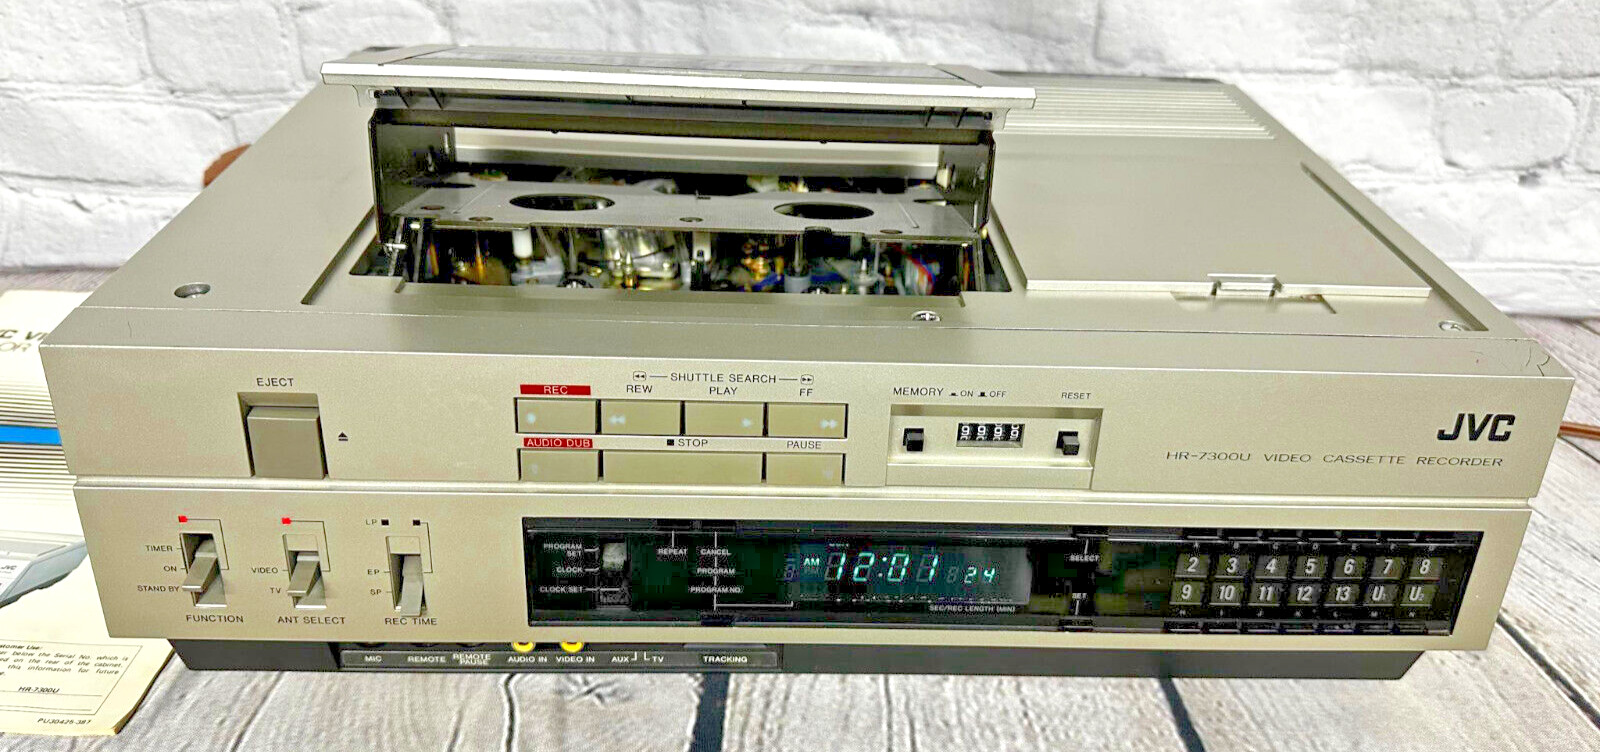 ВИДЕОМАГНИТОФОН JVC HR 7300U с редкой мощностью загрузки-Япония-1982-год